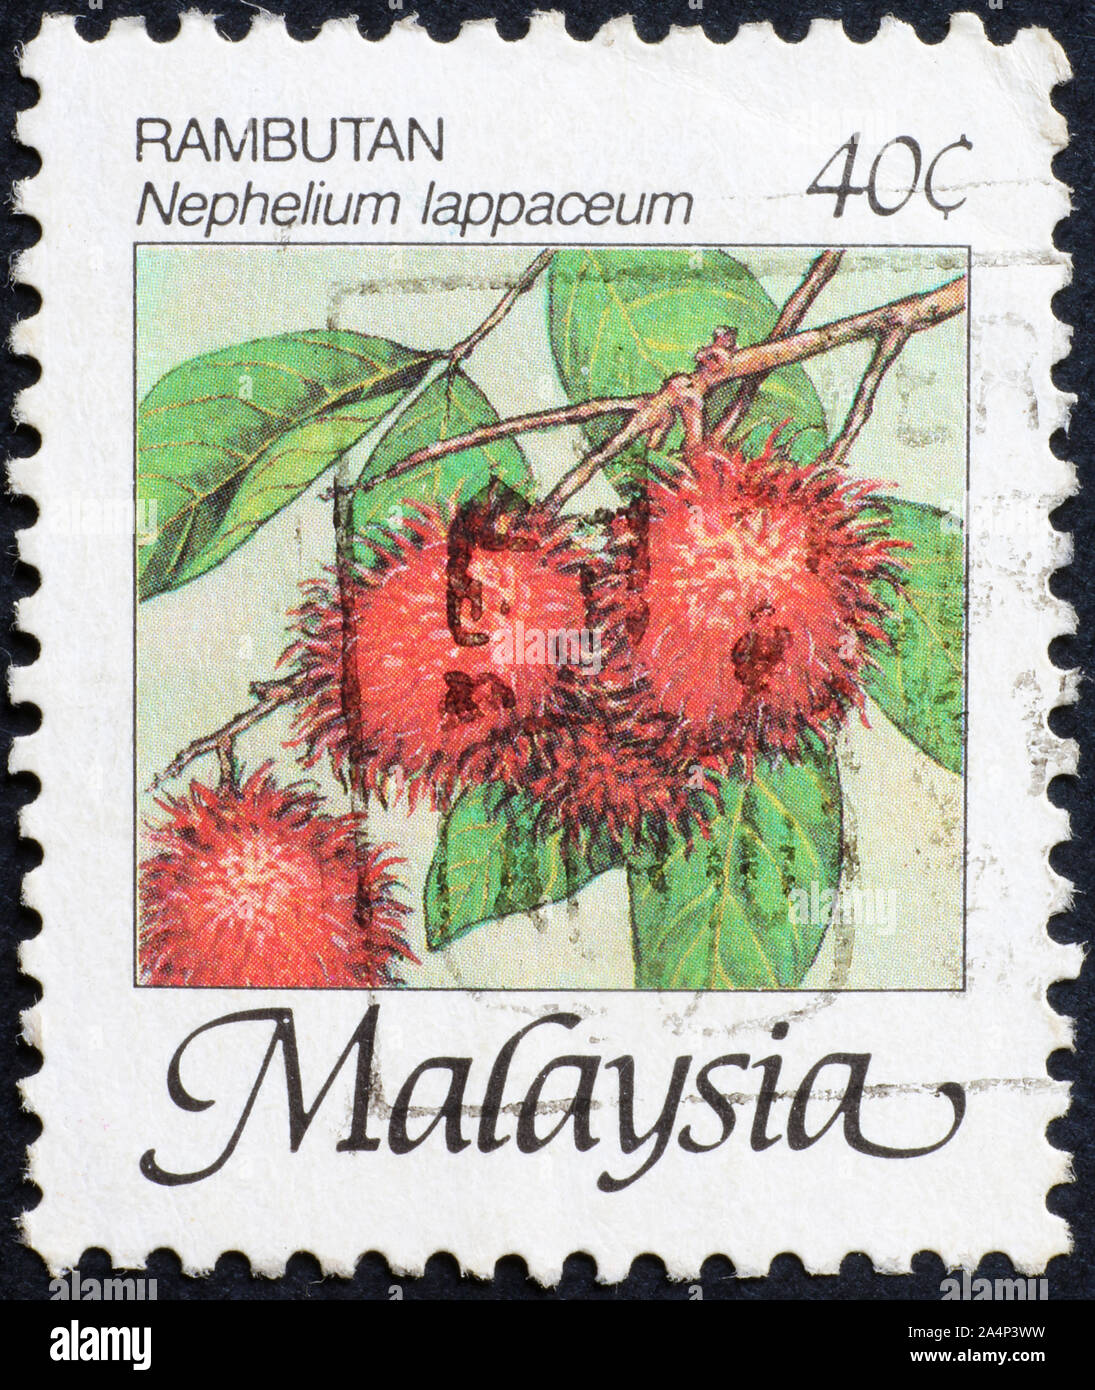 Rambutan fruit sur timbre-poste de la Malaisie Banque D'Images